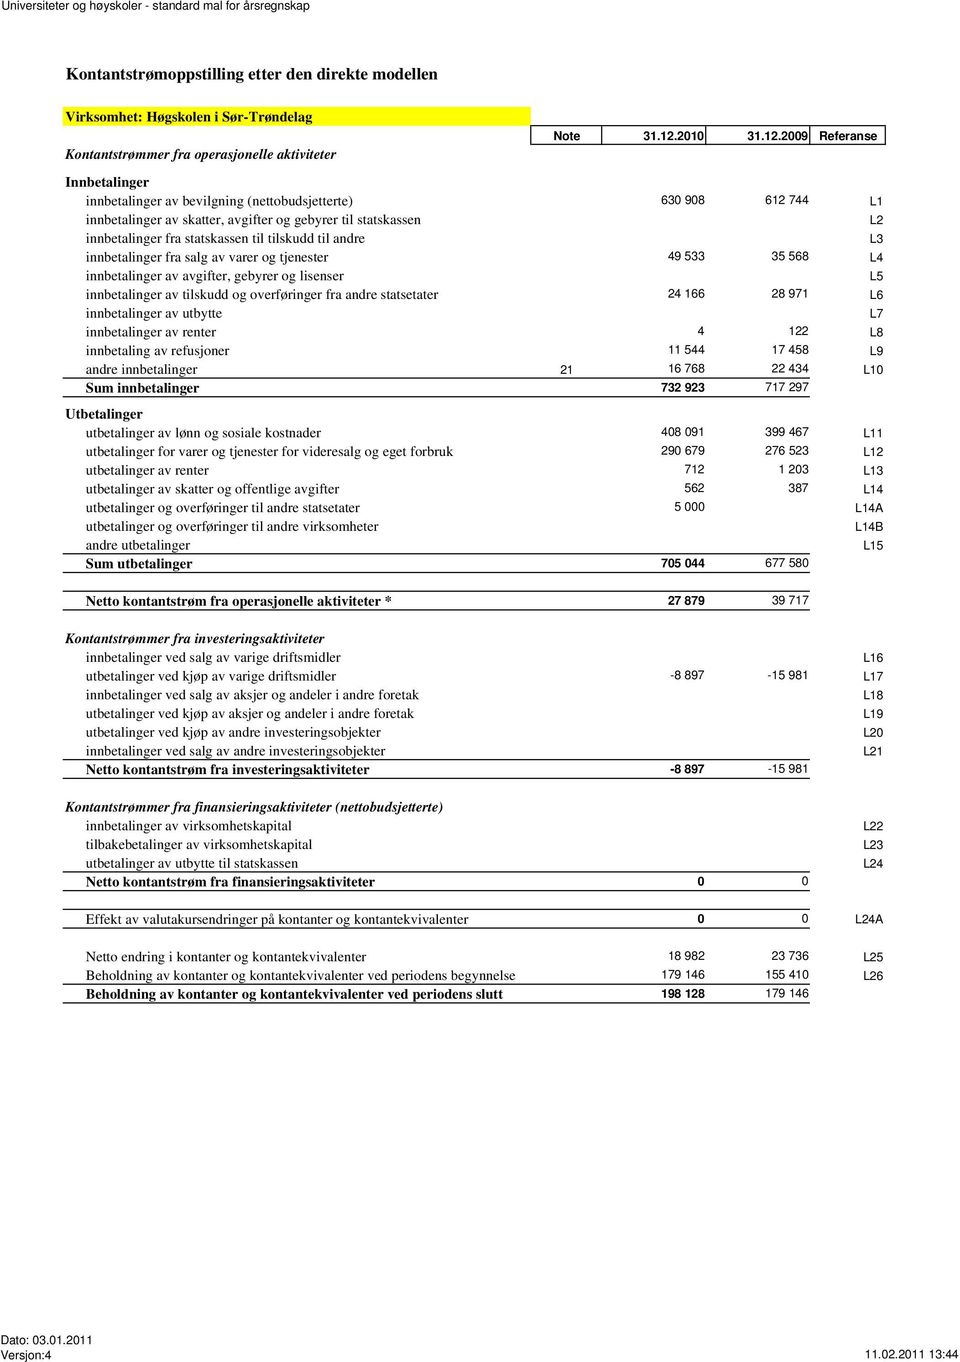 2009 Referanse Kontantstrømmer fra operasjonelle aktiviteter Innbetalinger innbetalinger av bevilgning (nettobudsjetterte) 630 908 612 744 L1 innbetalinger av skatter, avgifter og gebyrer til